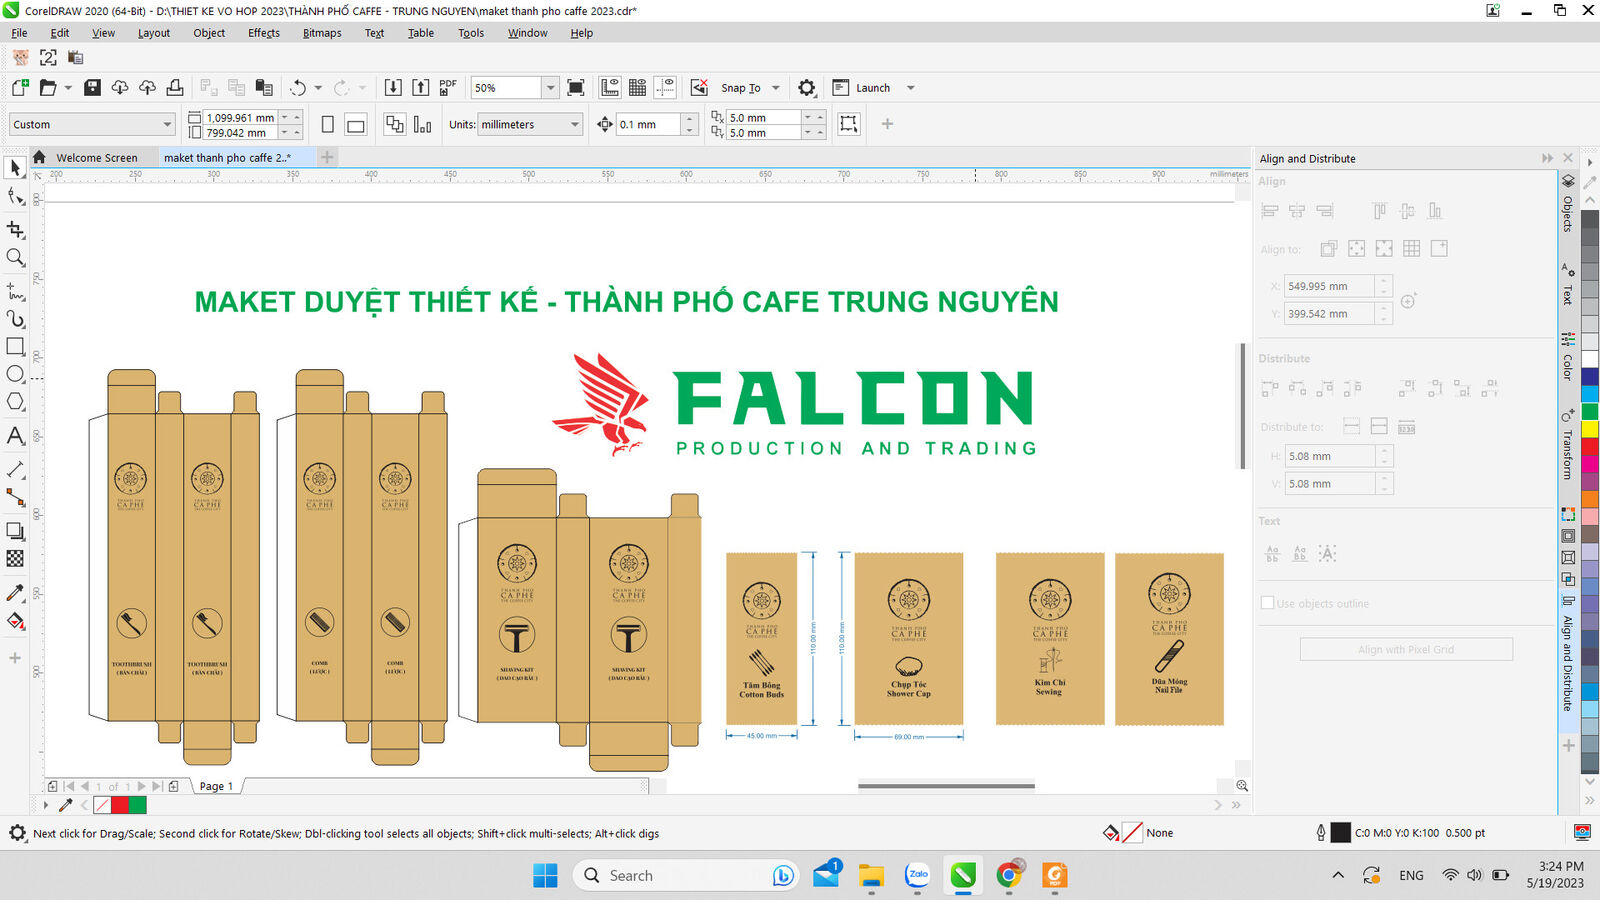 Bản thiết kế bao bì túi giấy thân thiện môi trường do đội ngũ nhân viên tại Falcon thiết kế